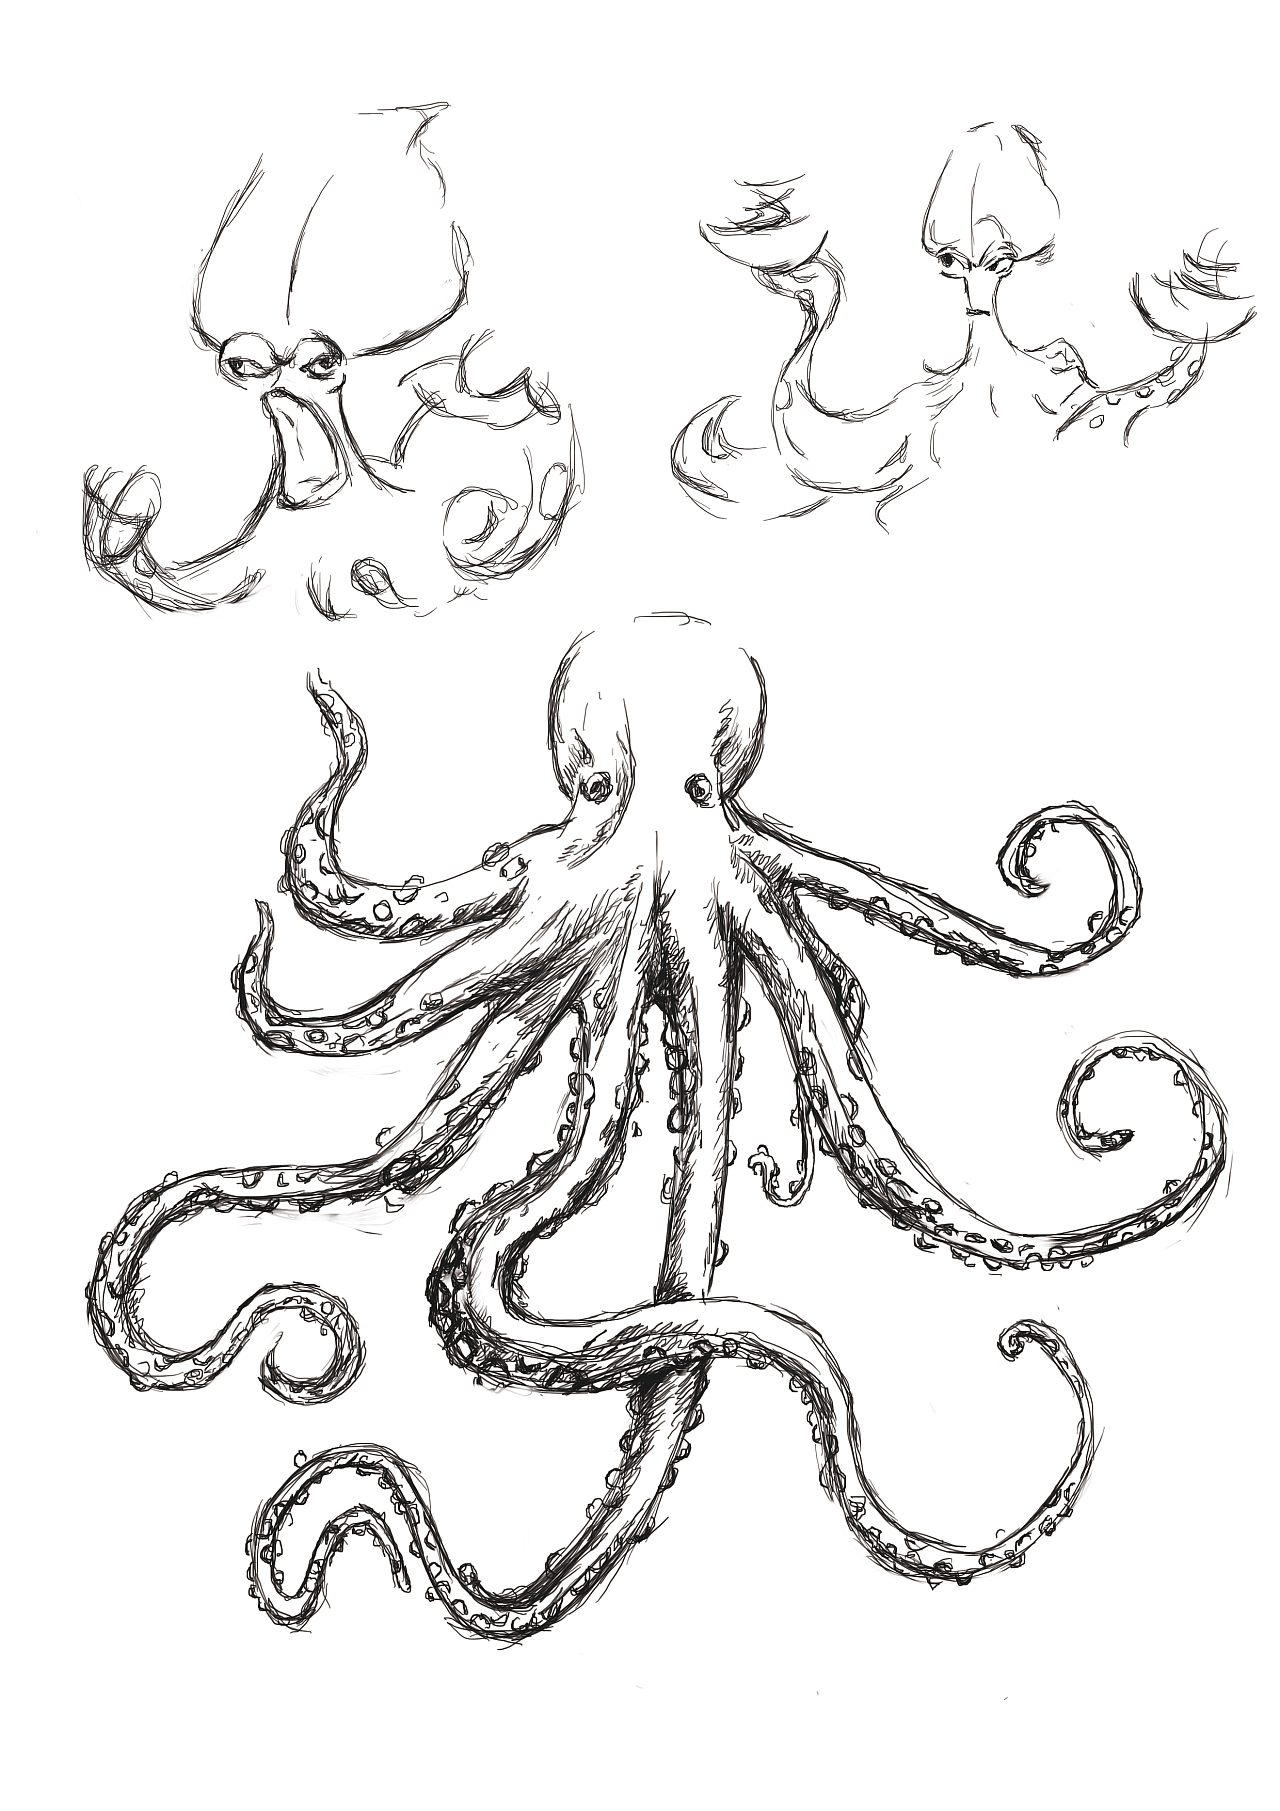 大章鱼的画法图片